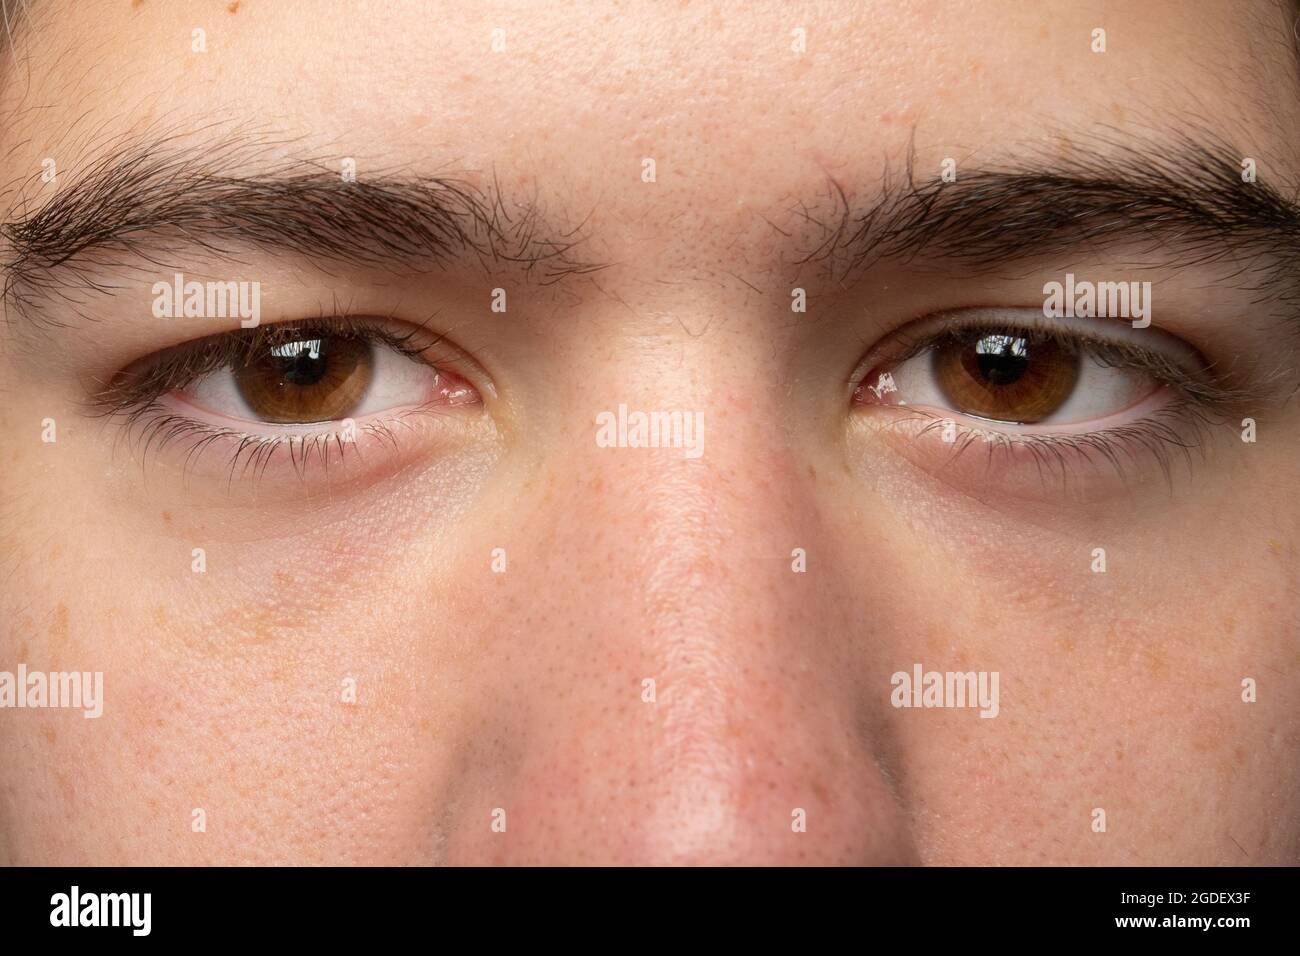 occhi color miele del ragazzo con sopracciglia nere Foto stock - Alamy